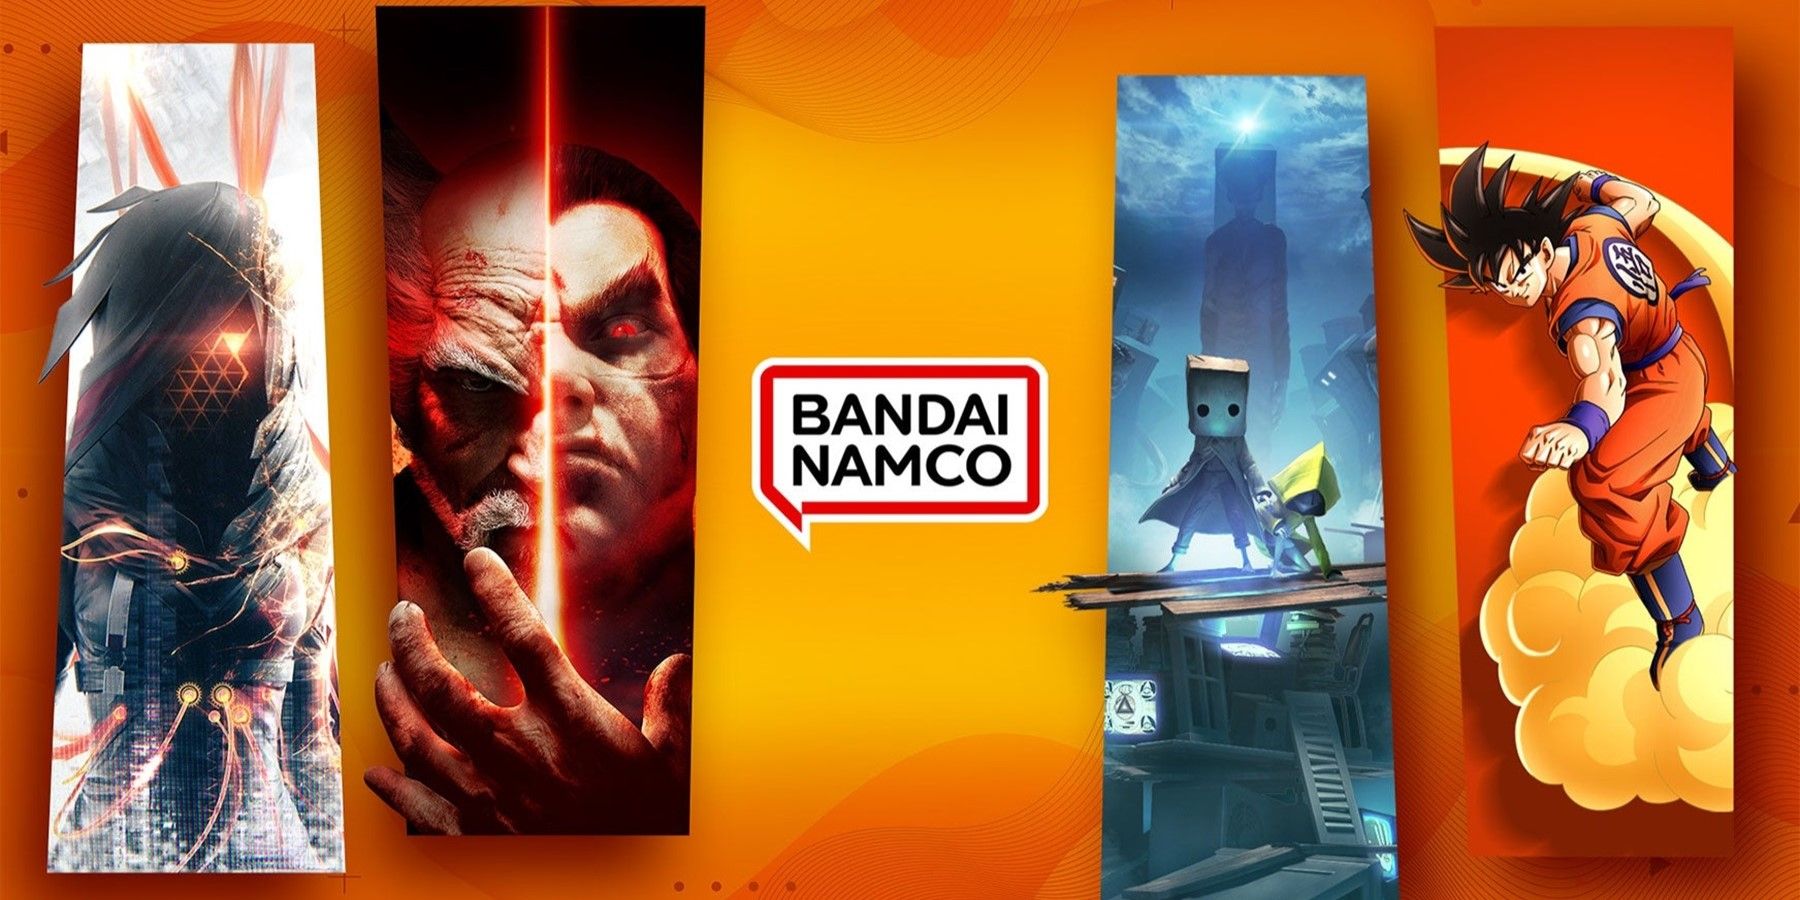 bandai namco hints at revivals of many classic games